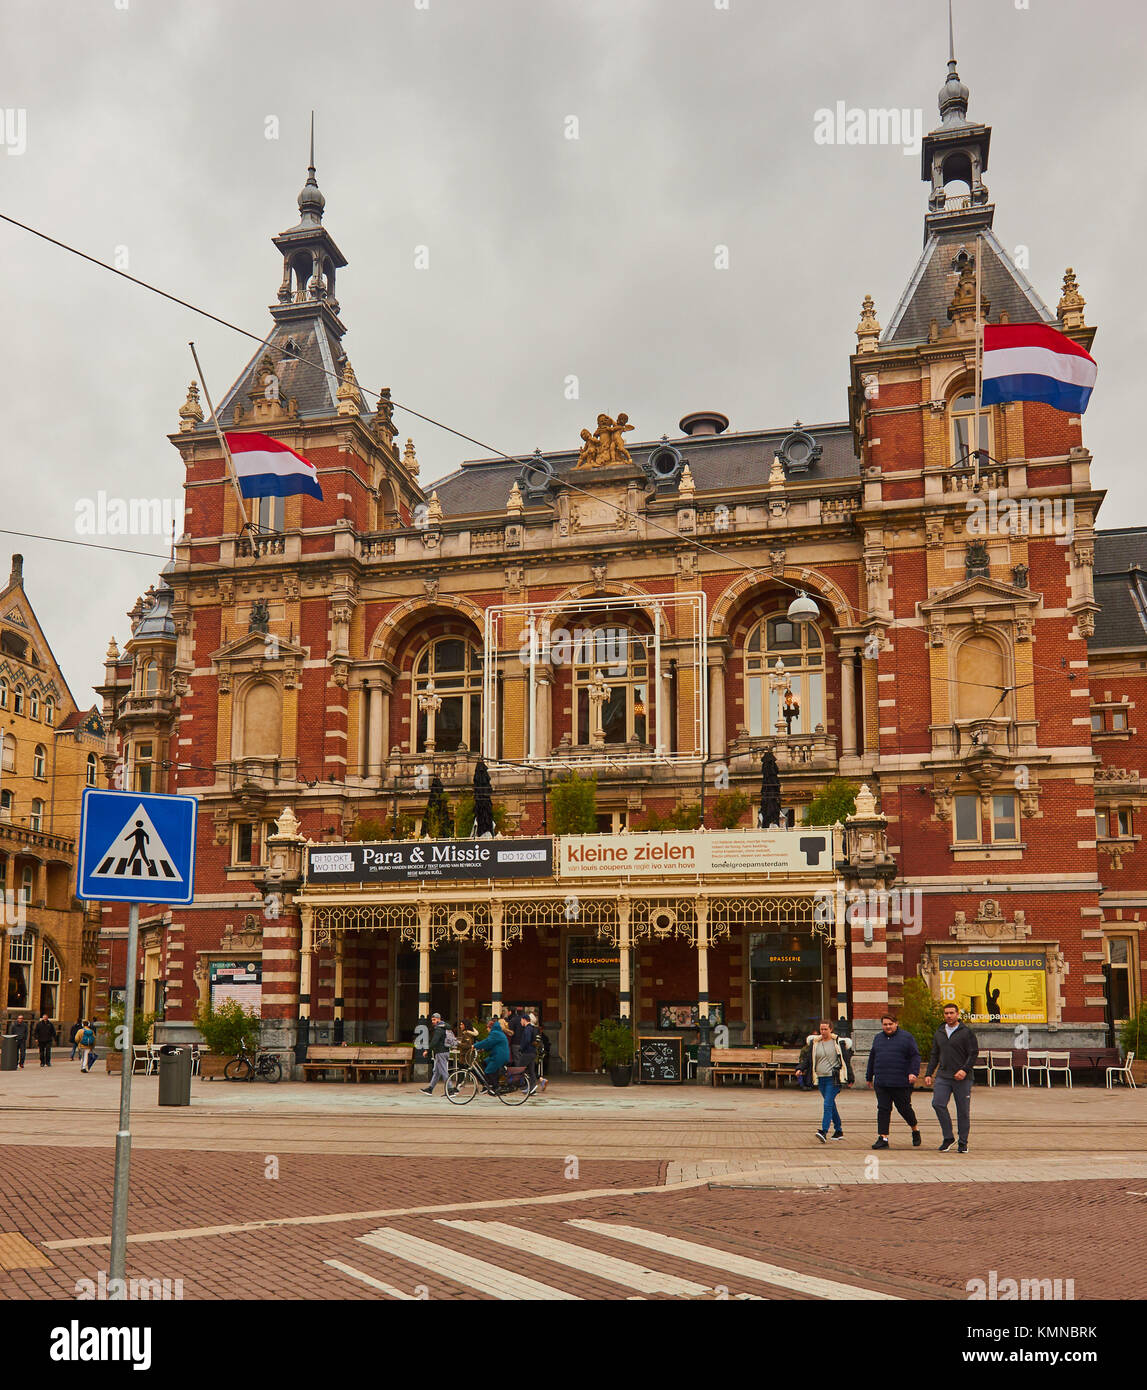 Stadsschouwburg néo-renaissance (Théâtre Municipal) ouvert en 1894, Leidseplan, Amsterdam, Pays-Bas Banque D'Images